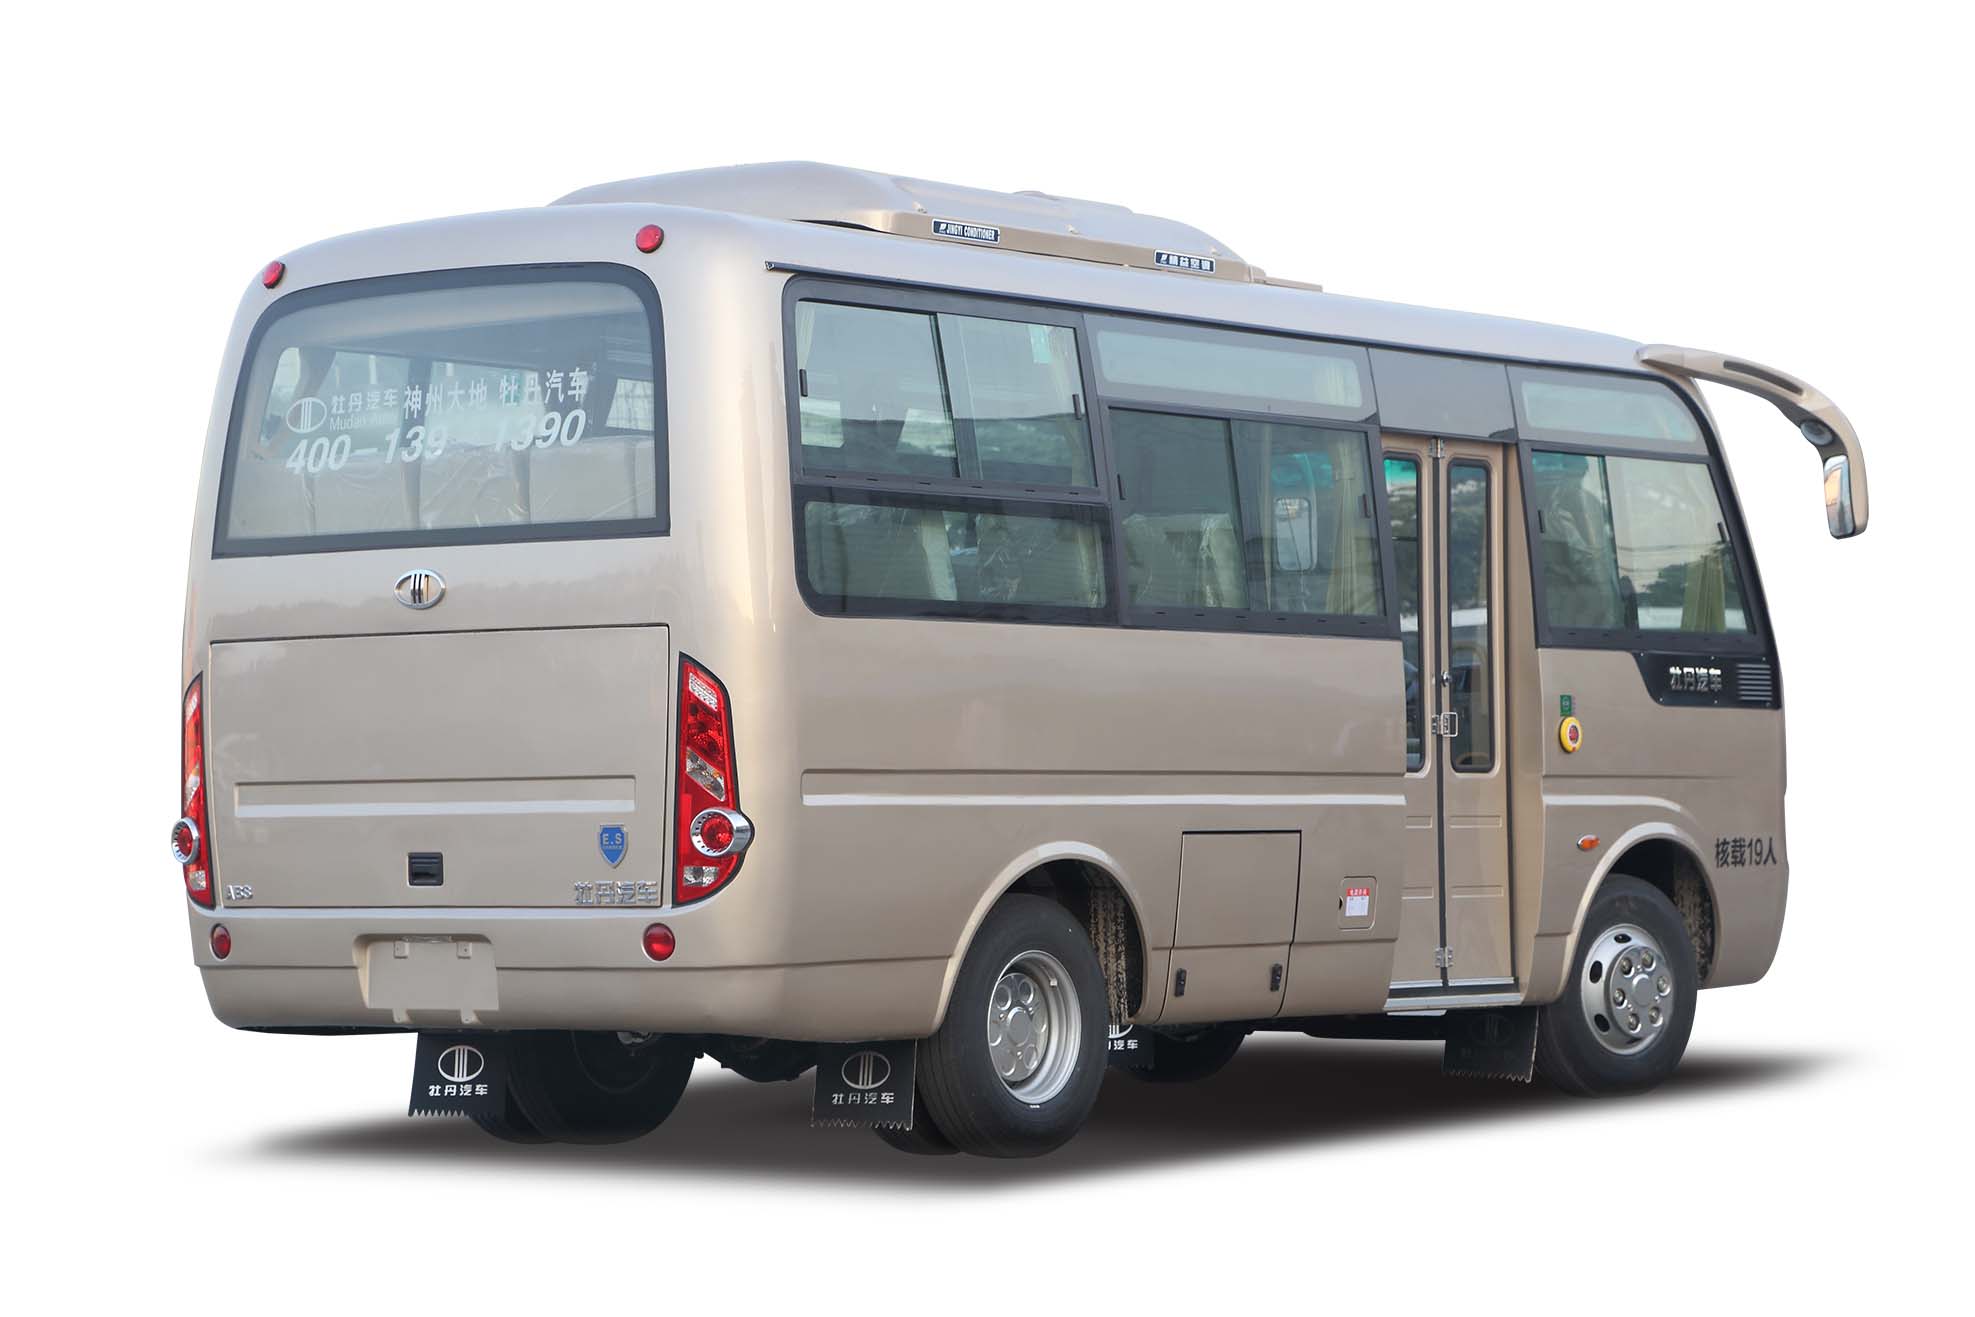 Minibús diesel estrella de 19 asientos